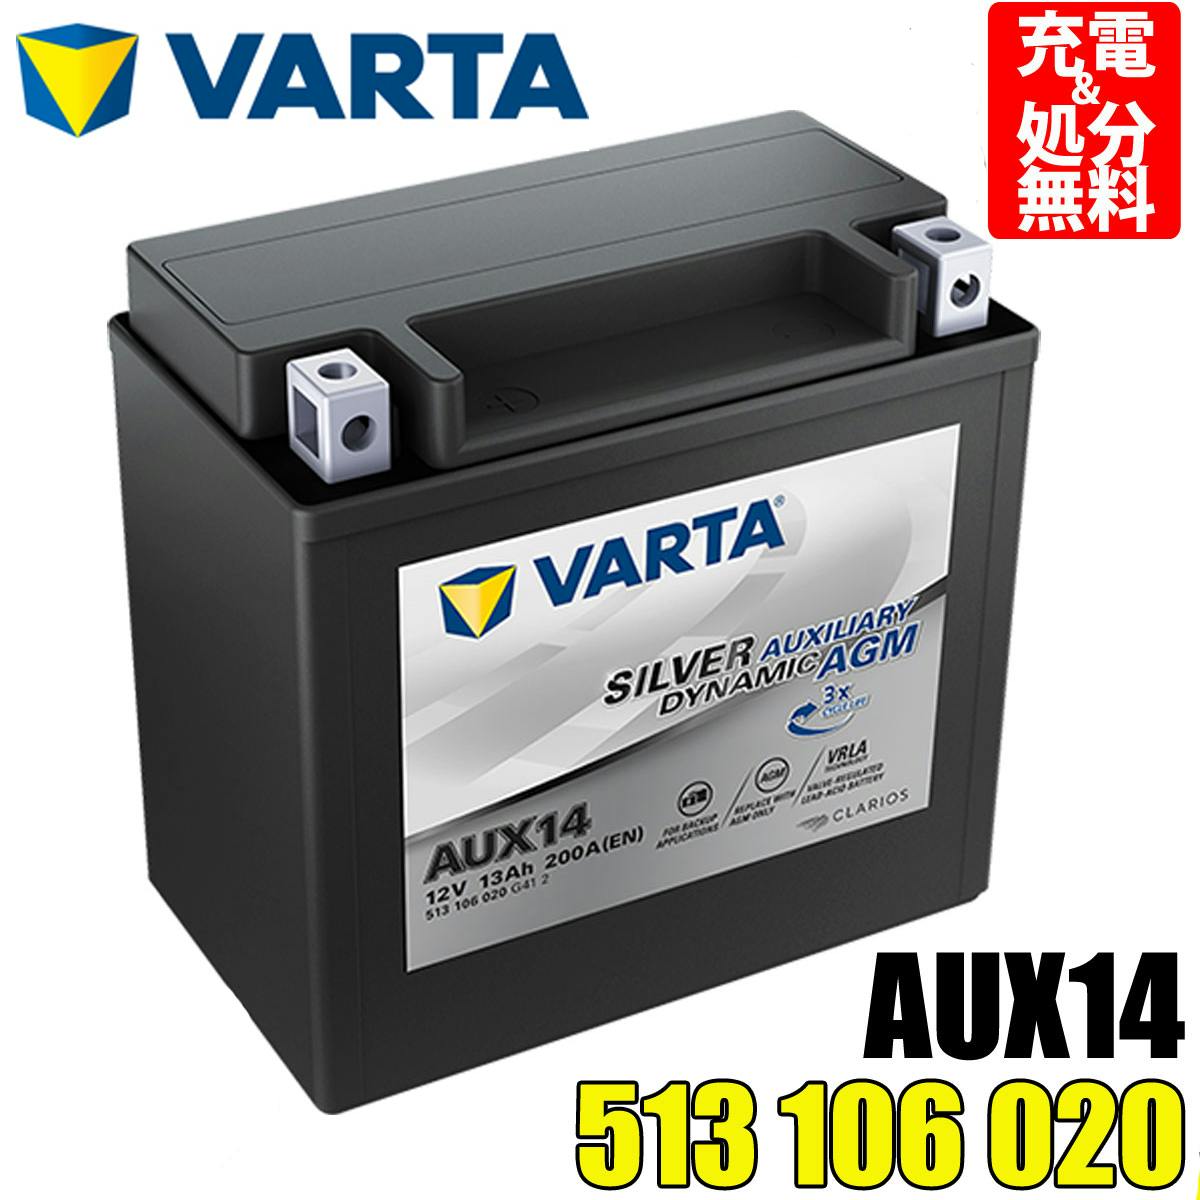 VARTA 535-106-052 VARTA バッテリー補機用 AUX1 35A メルセデスベンツ Sクラス 221 送料無料 新品